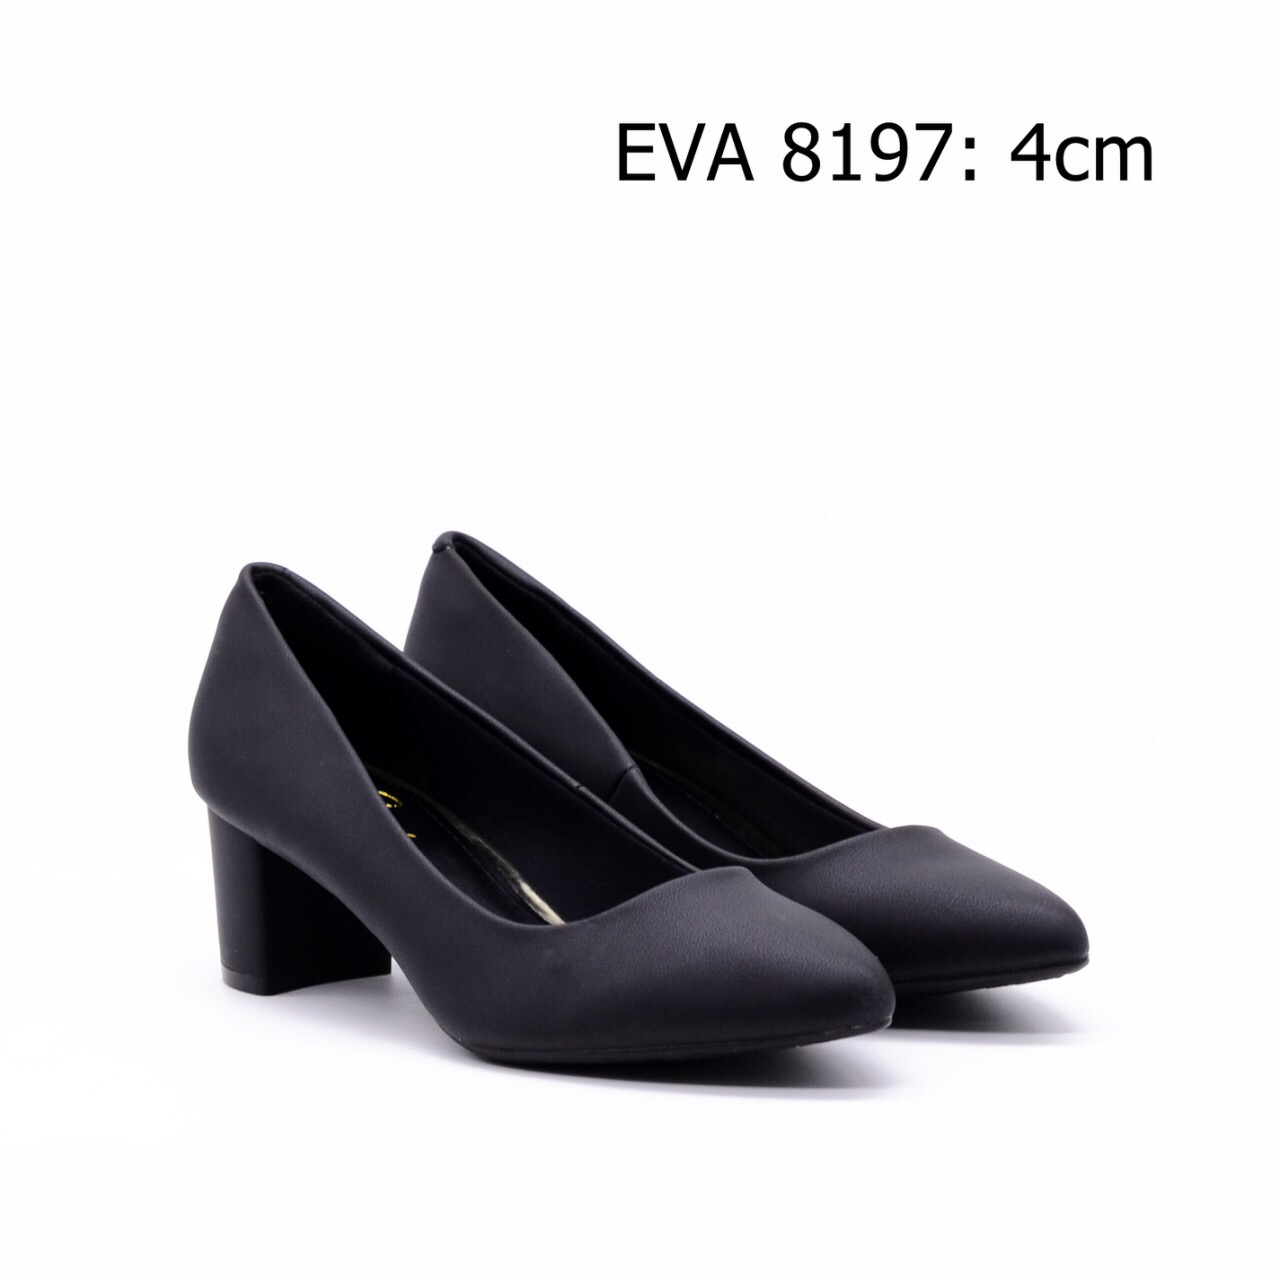 Giày công sở gót vuông EVA8197 da lì cao 4cm.